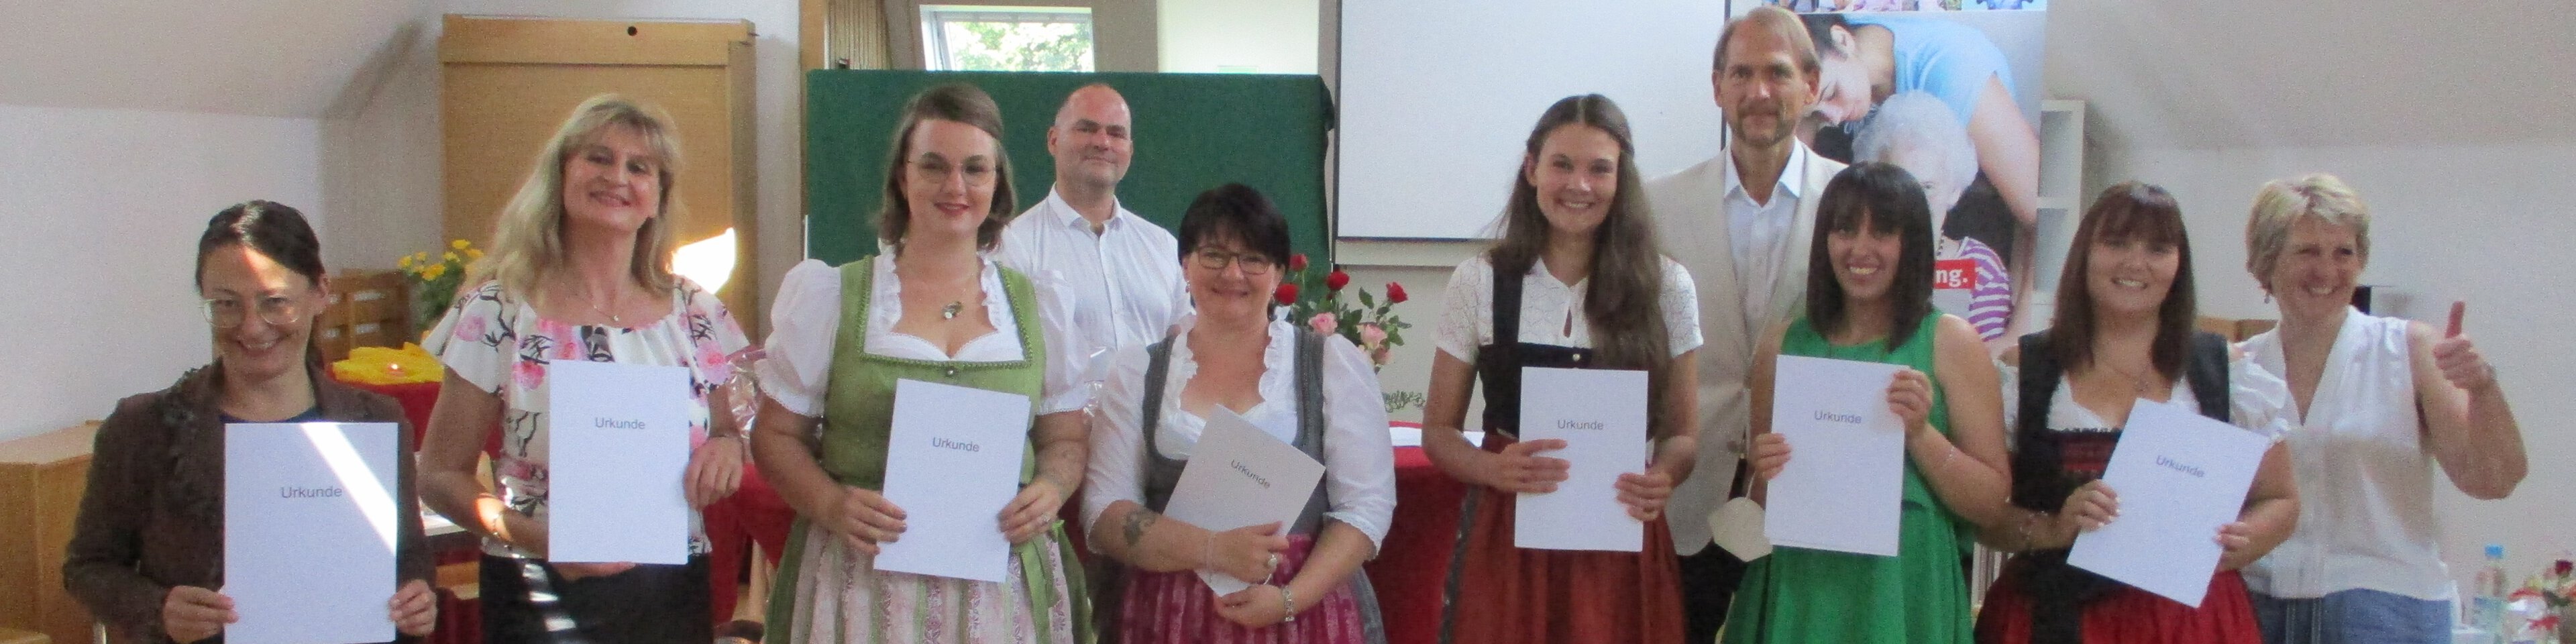 Gruppenfoto Absolventen und Absolventinnen | © Caritas München und Oberbayern